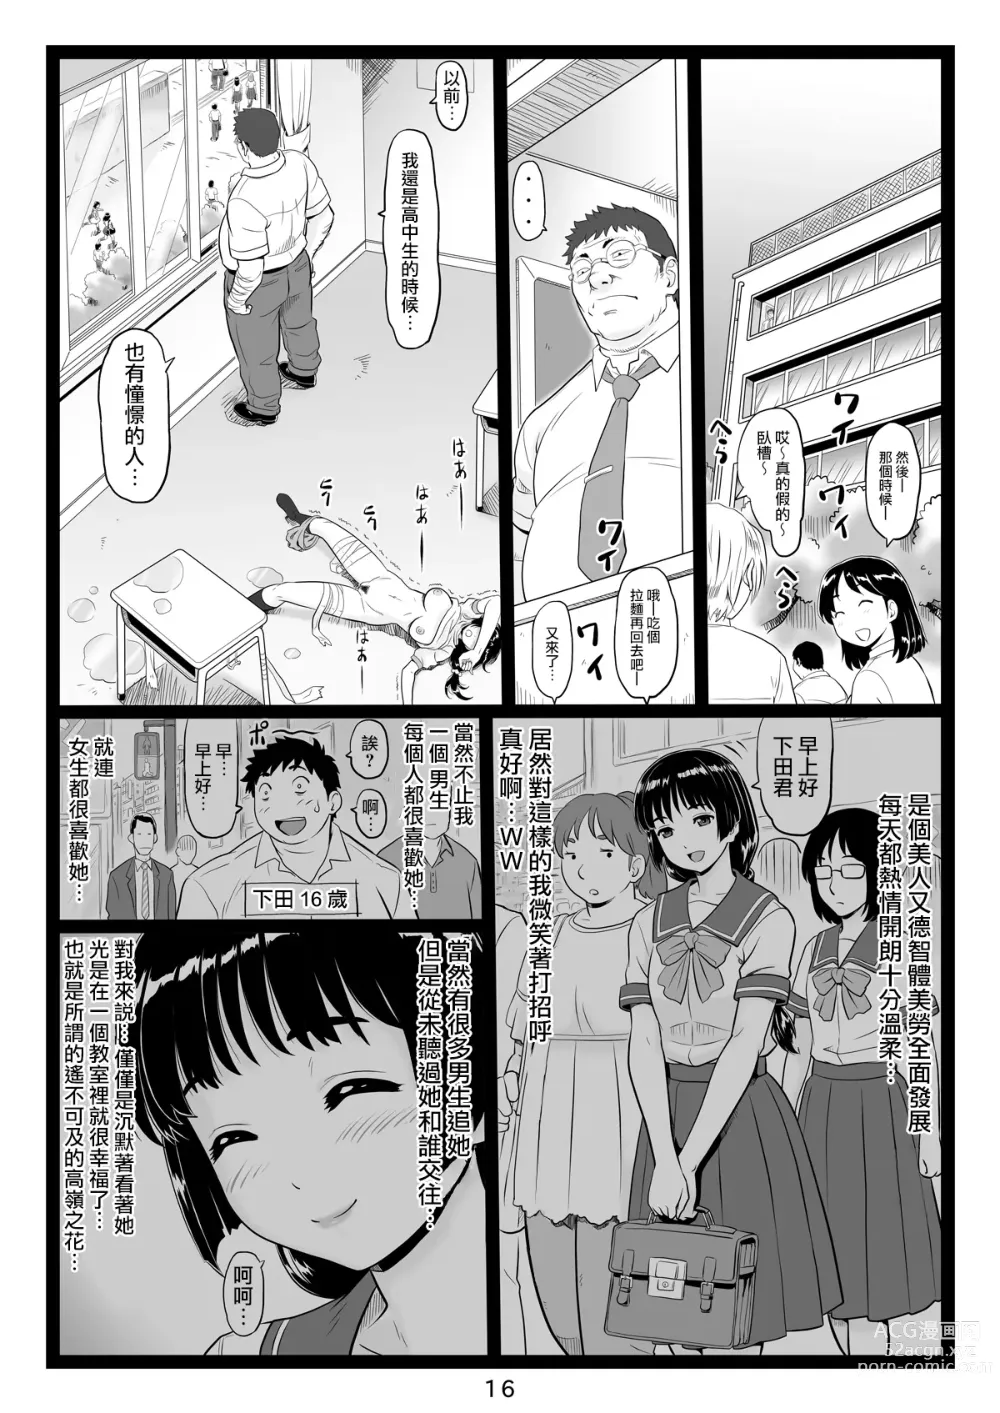 Page 16 of doujinshi Tawawa de Akarui Yakyuubu Manager ga Inshitsu na Kyoushi no Wana ni... Sonogo...